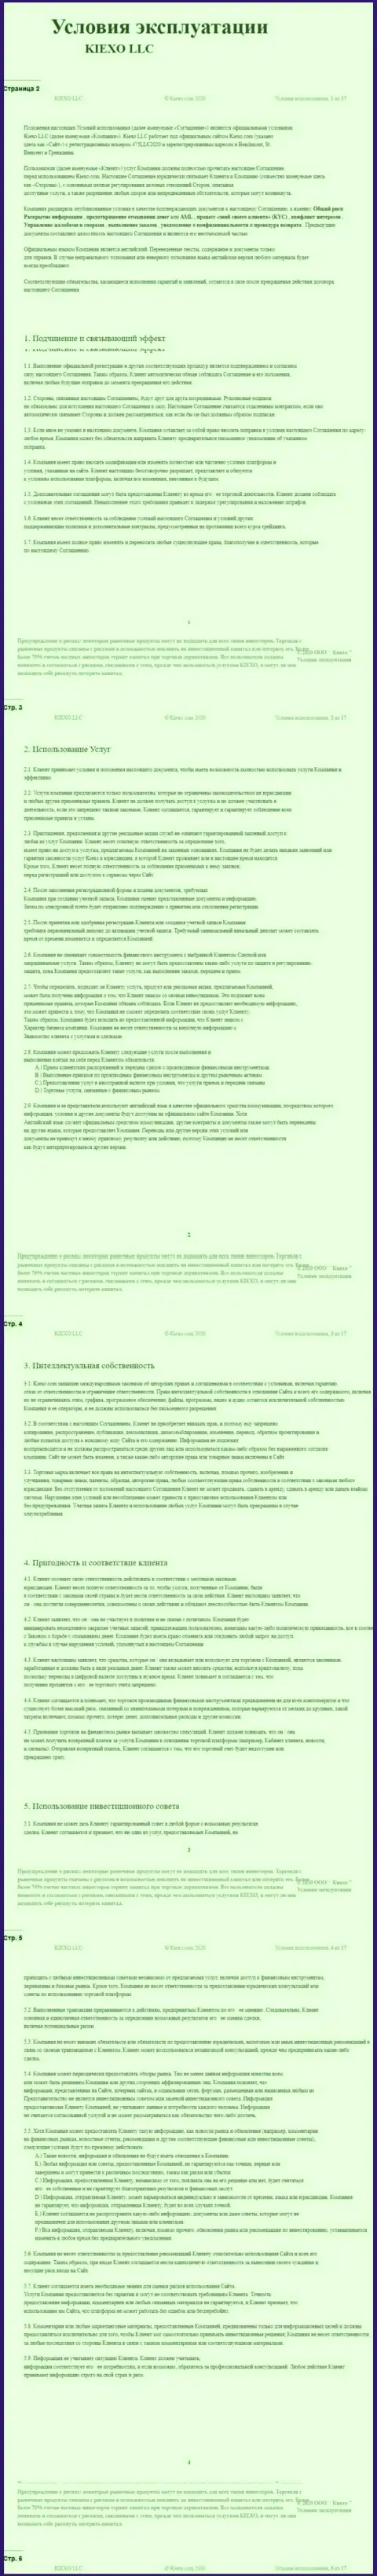 Пользовательское соглашение форекс дилингового центра Киексо (часть первая)